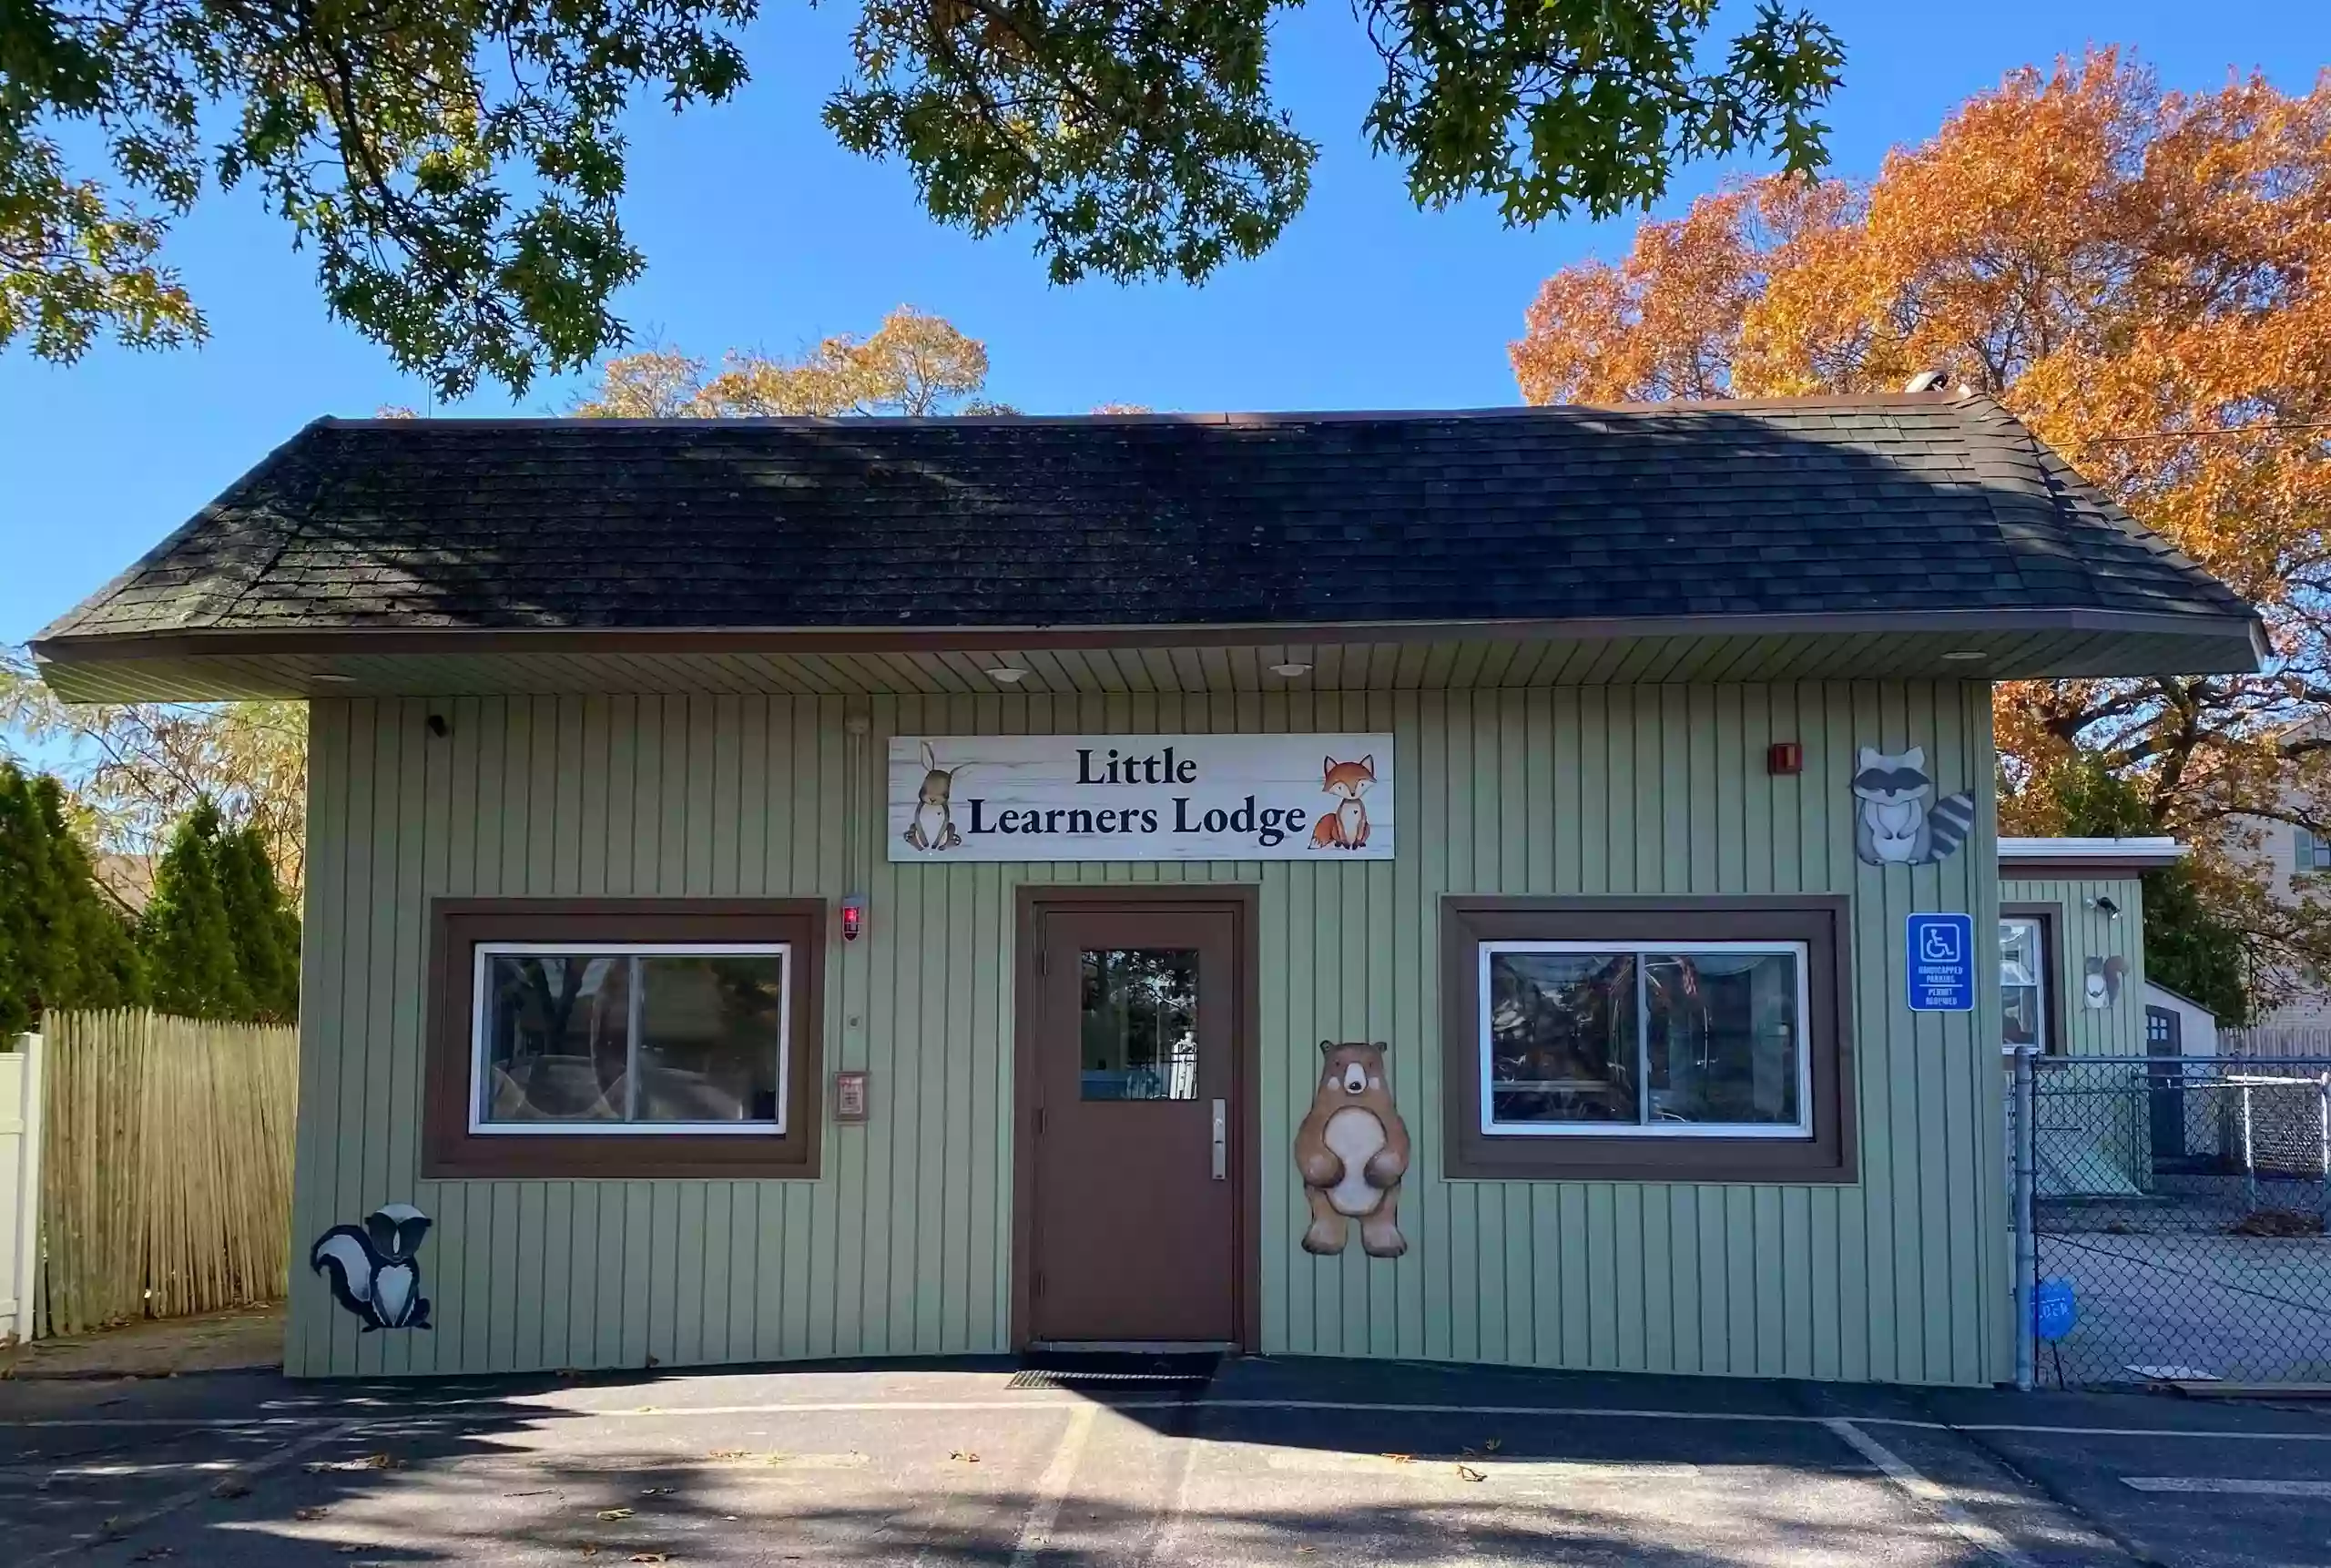 Little Learners Lodge, LLC